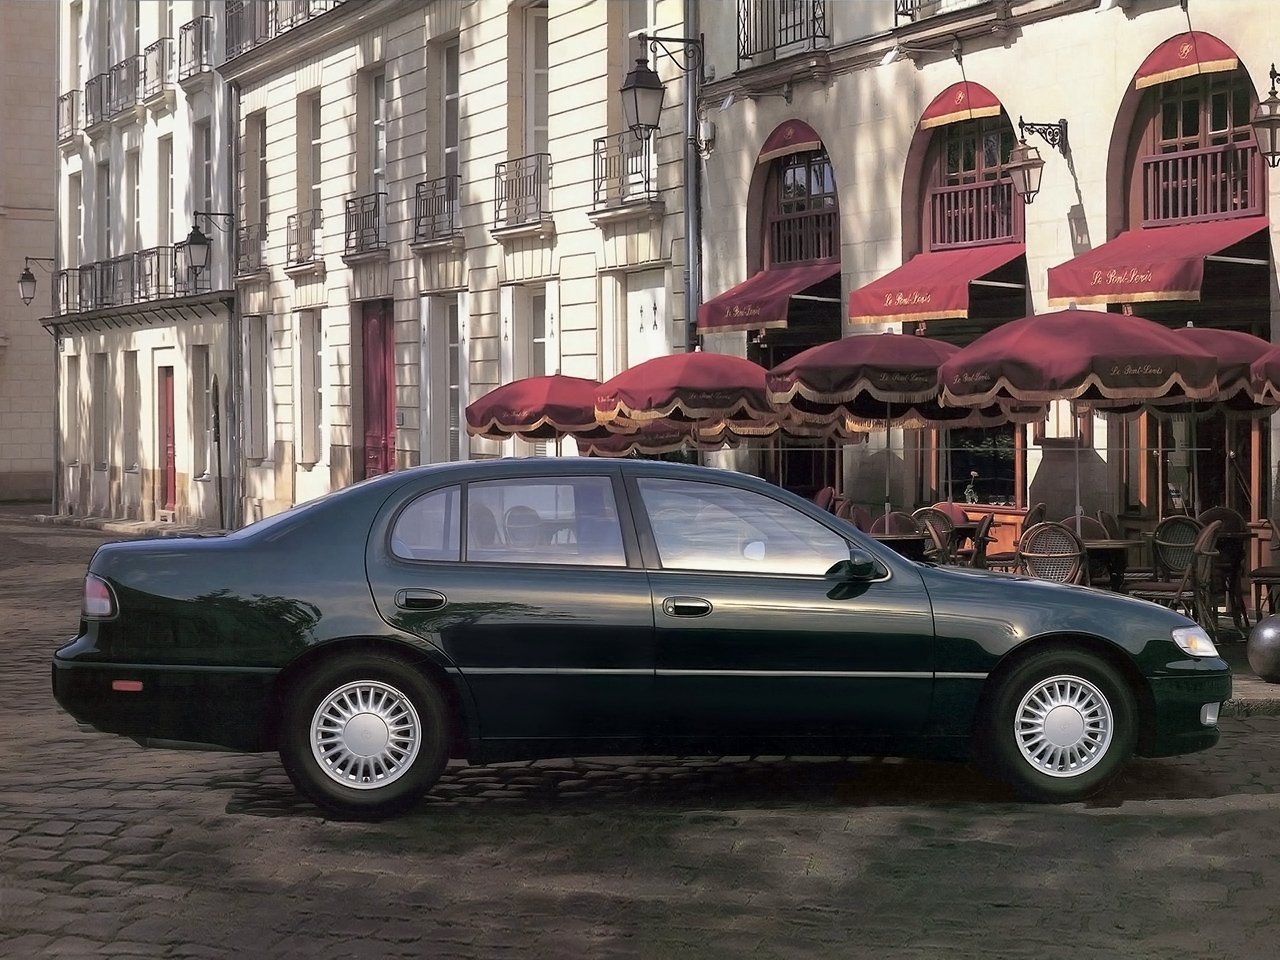 седан Toyota Aristo 1991 - 1997г выпуска модификация 3.0 AT (230 л.с.)